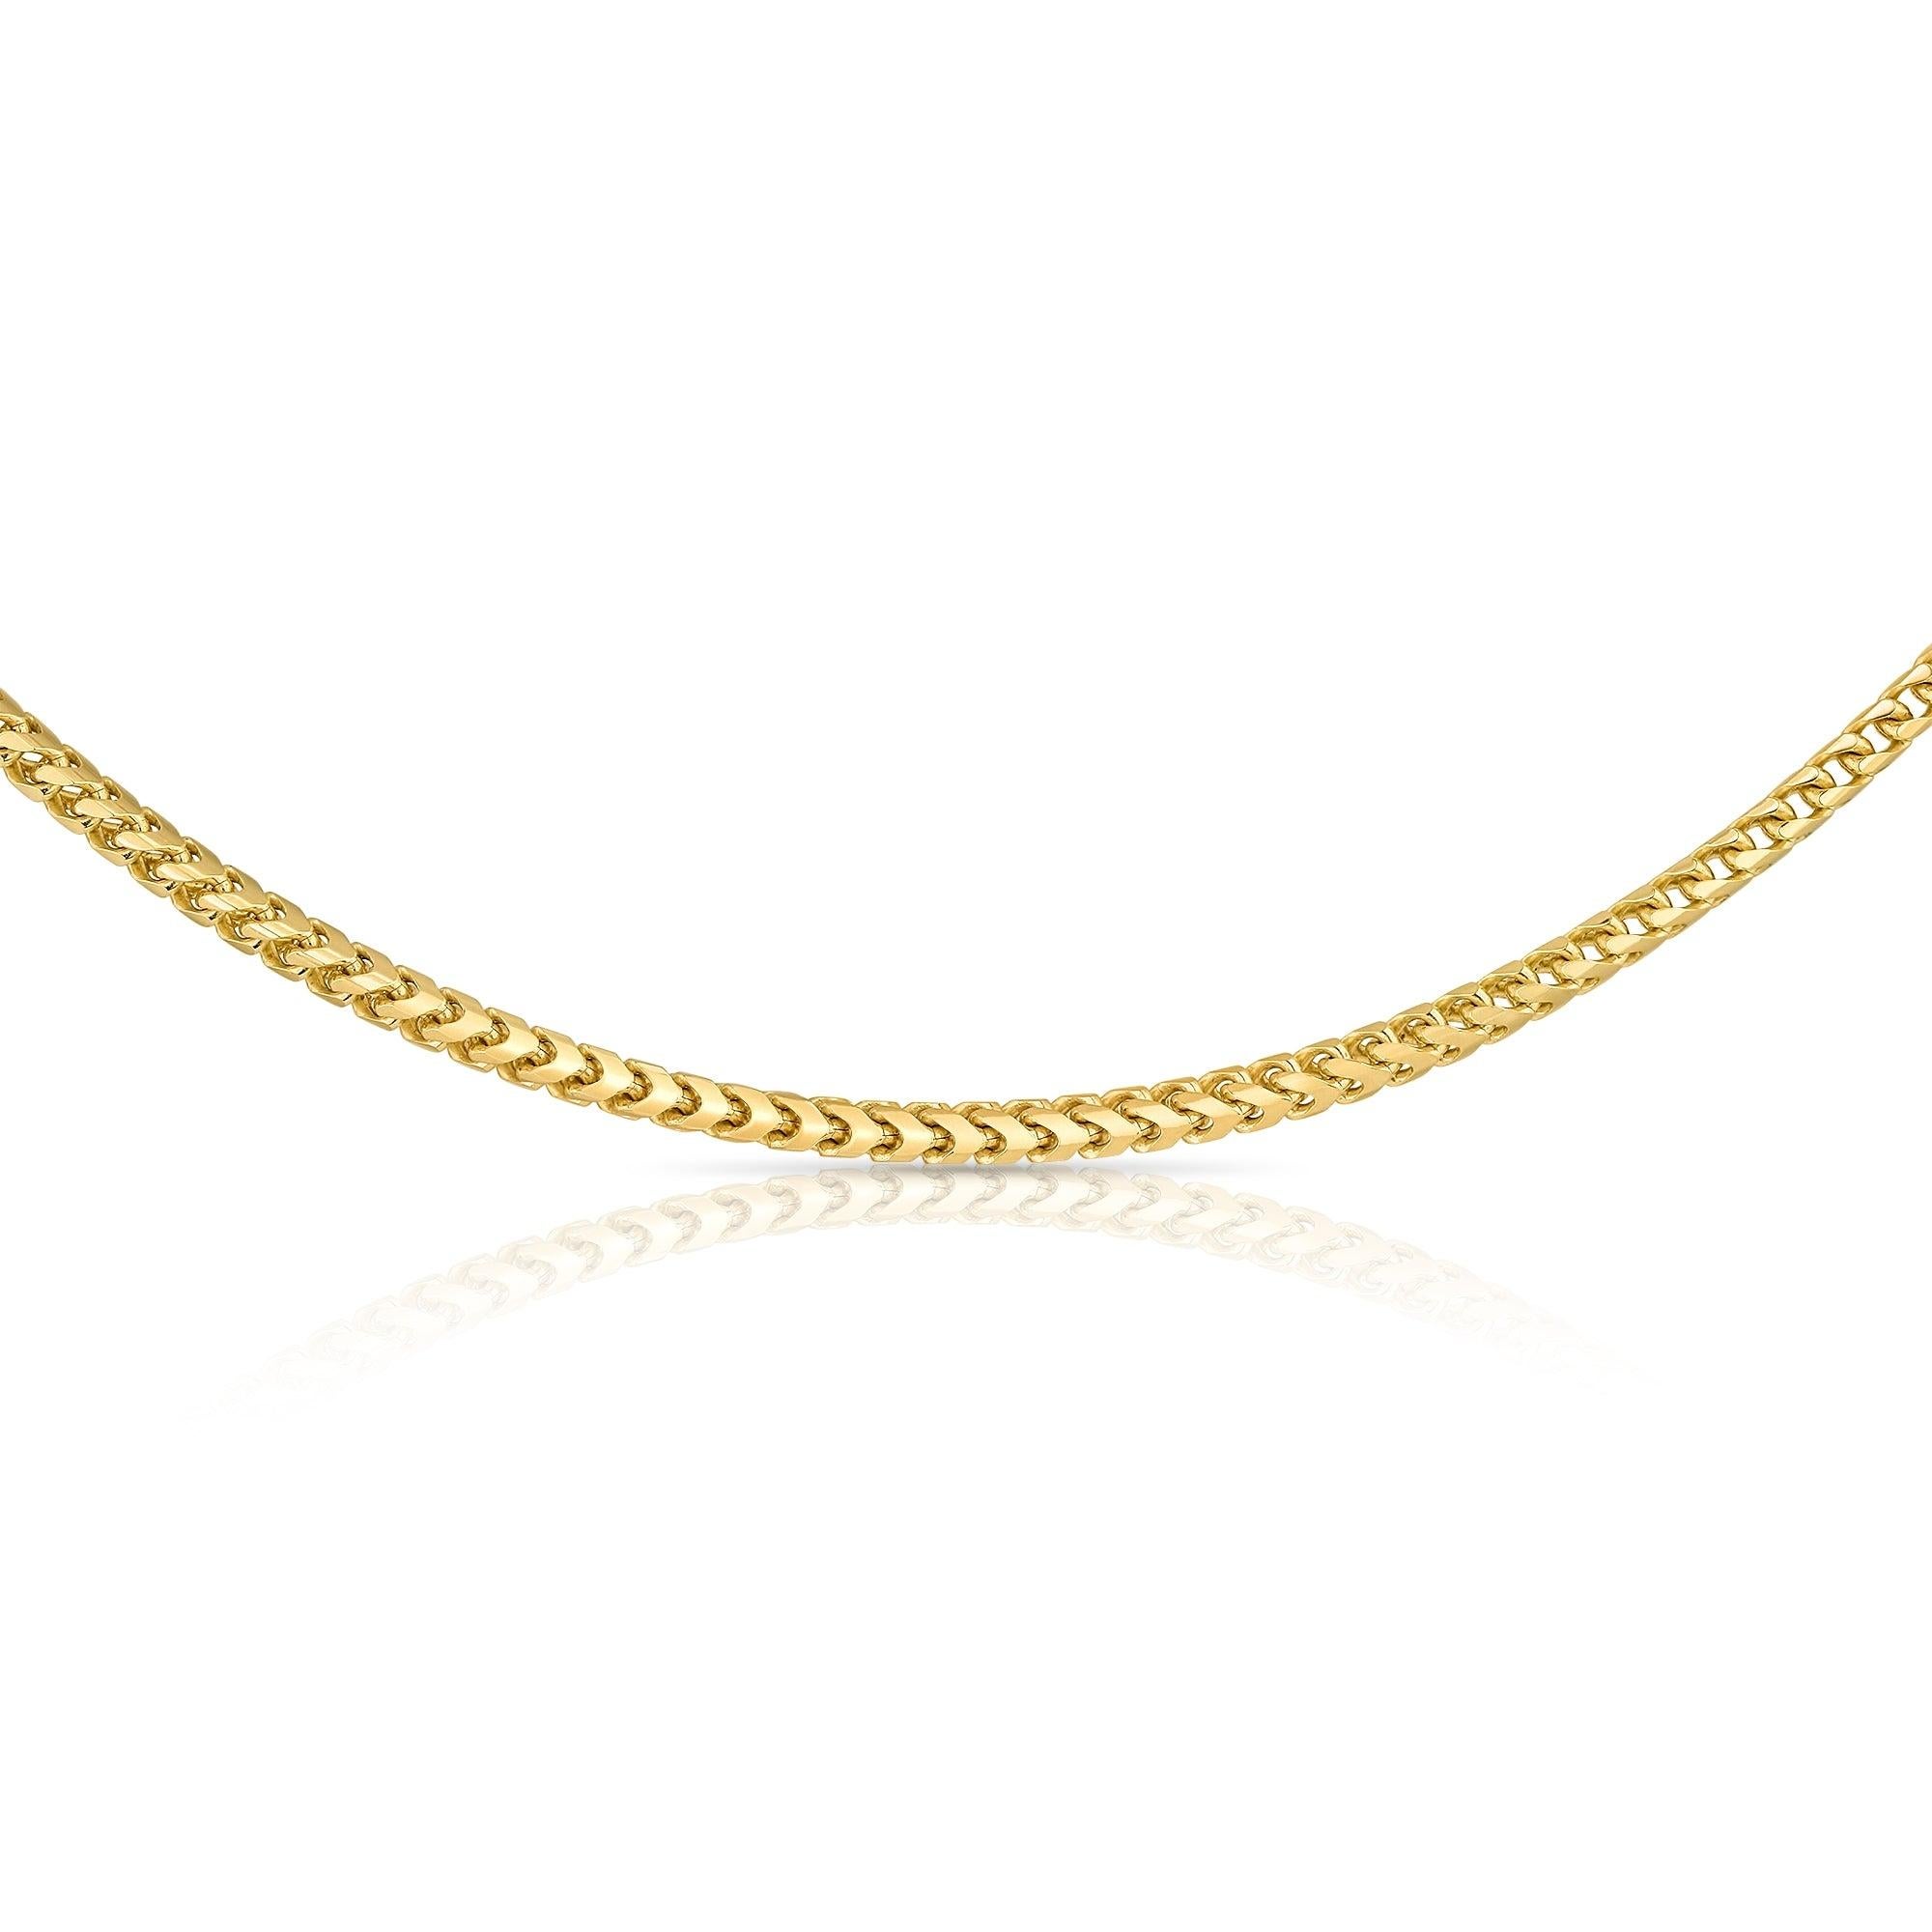 Collier classique pour homme en or jaune massif 14K pour lui par Shlomit Rogel

Un collier élégant qui a de la présence ! 
Simple et intemporel, ce collier fait partie de la collection Homme de Rogel's. Il est fabriqué en or jaune massif 14k.